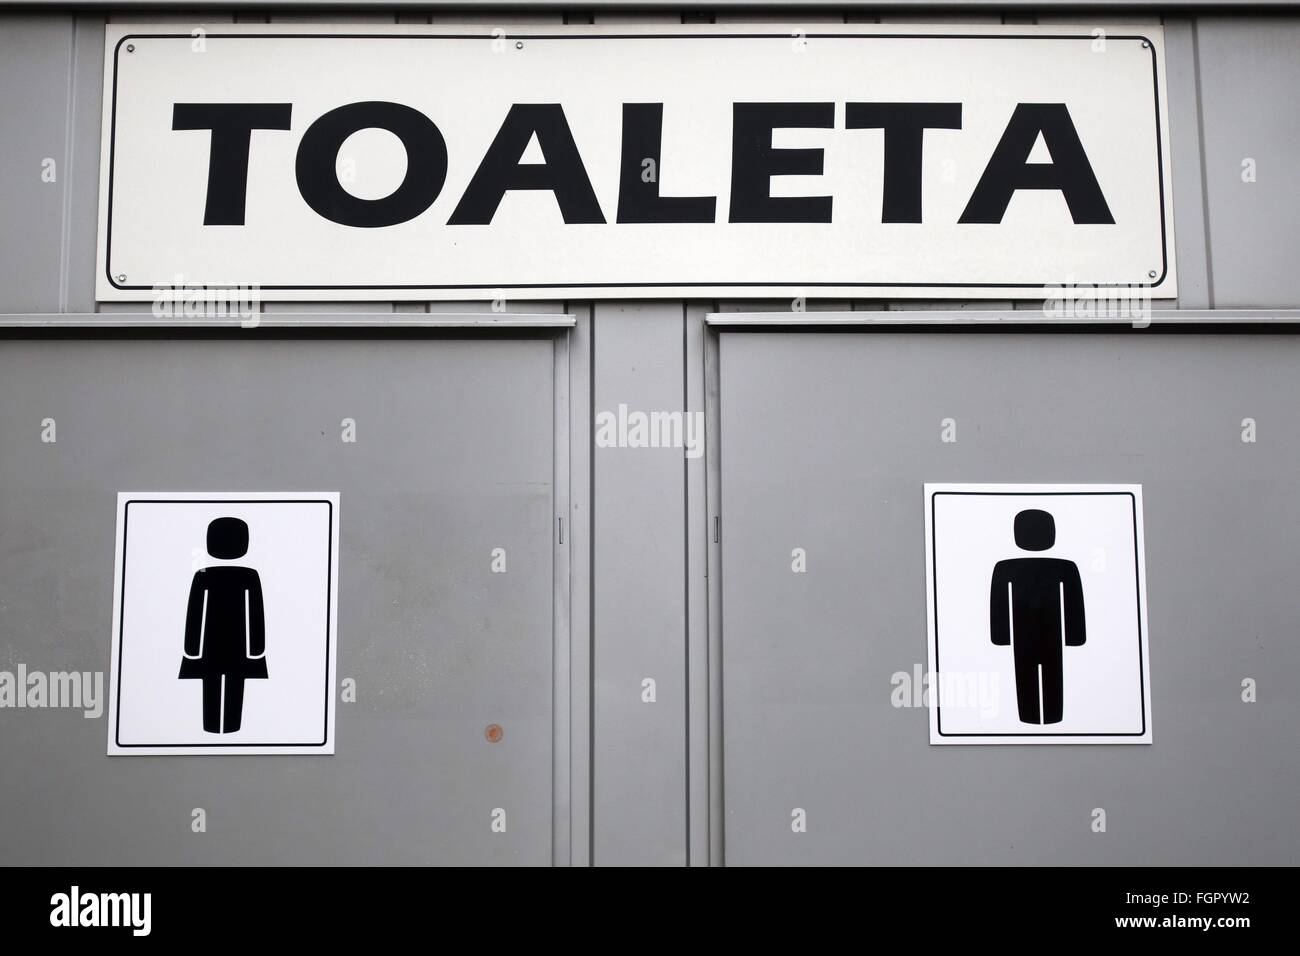 Toaleta (toilet) - Slovenia 2016 Stock Photo